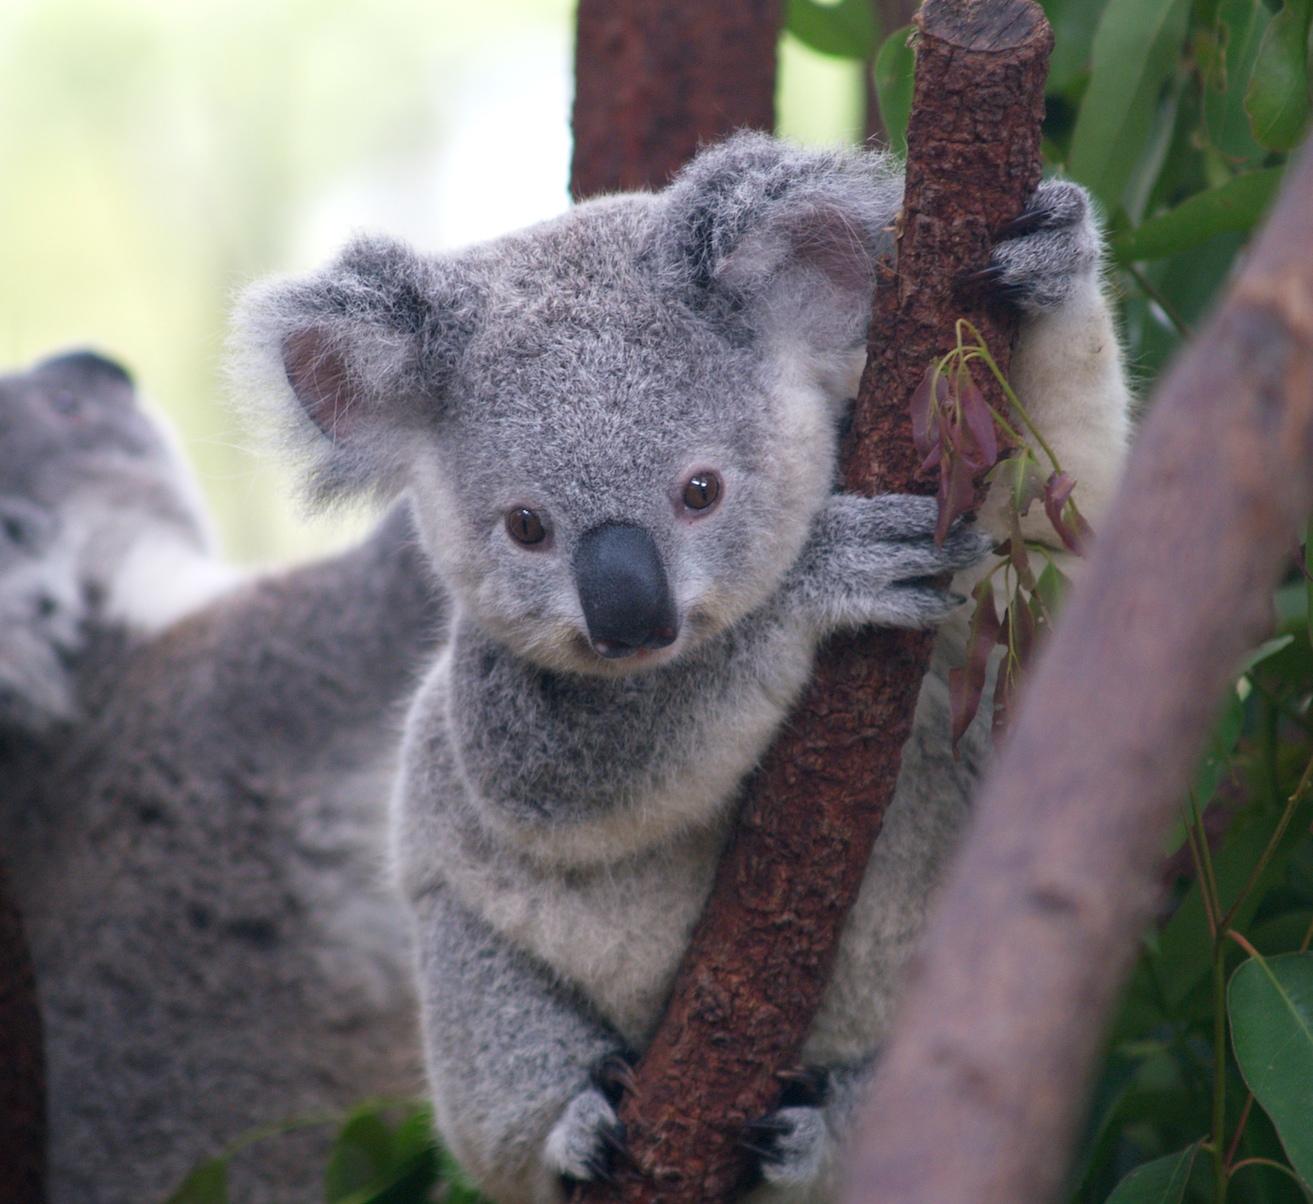 Wallpaper Koala Bear on Brown Tree Branch During Daytime Background   Download Free Image